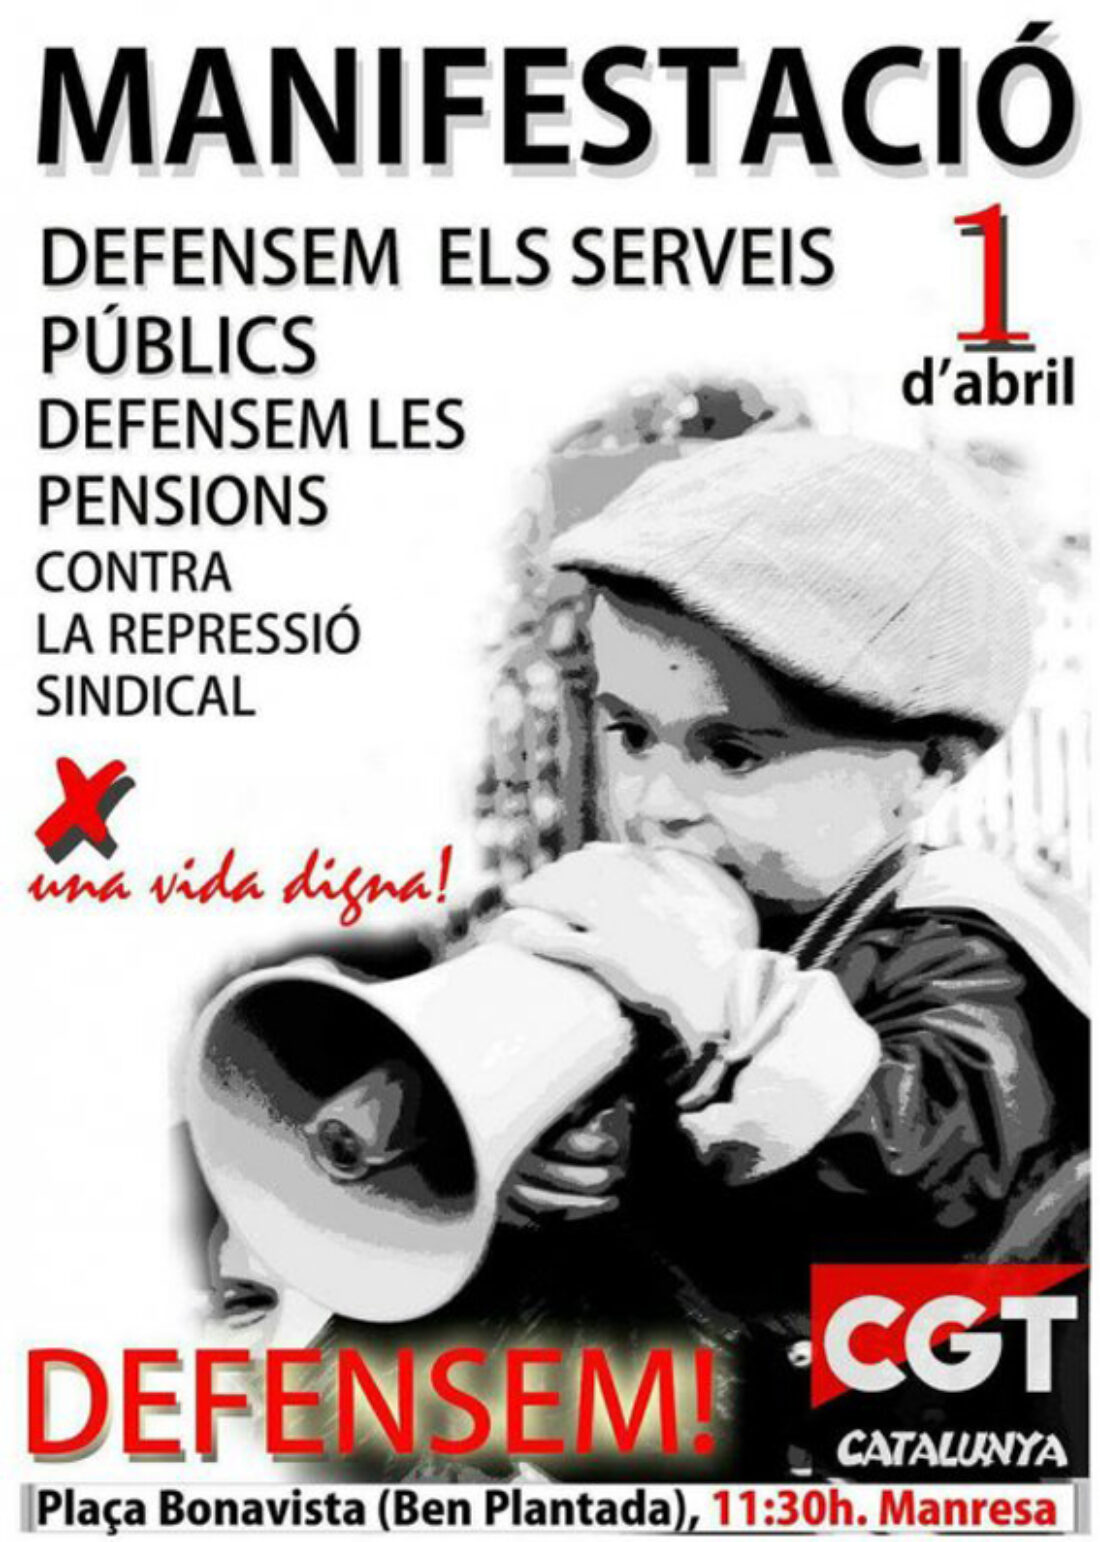 1-A: Manifestación en Manresa en defensa de los servicios públicos